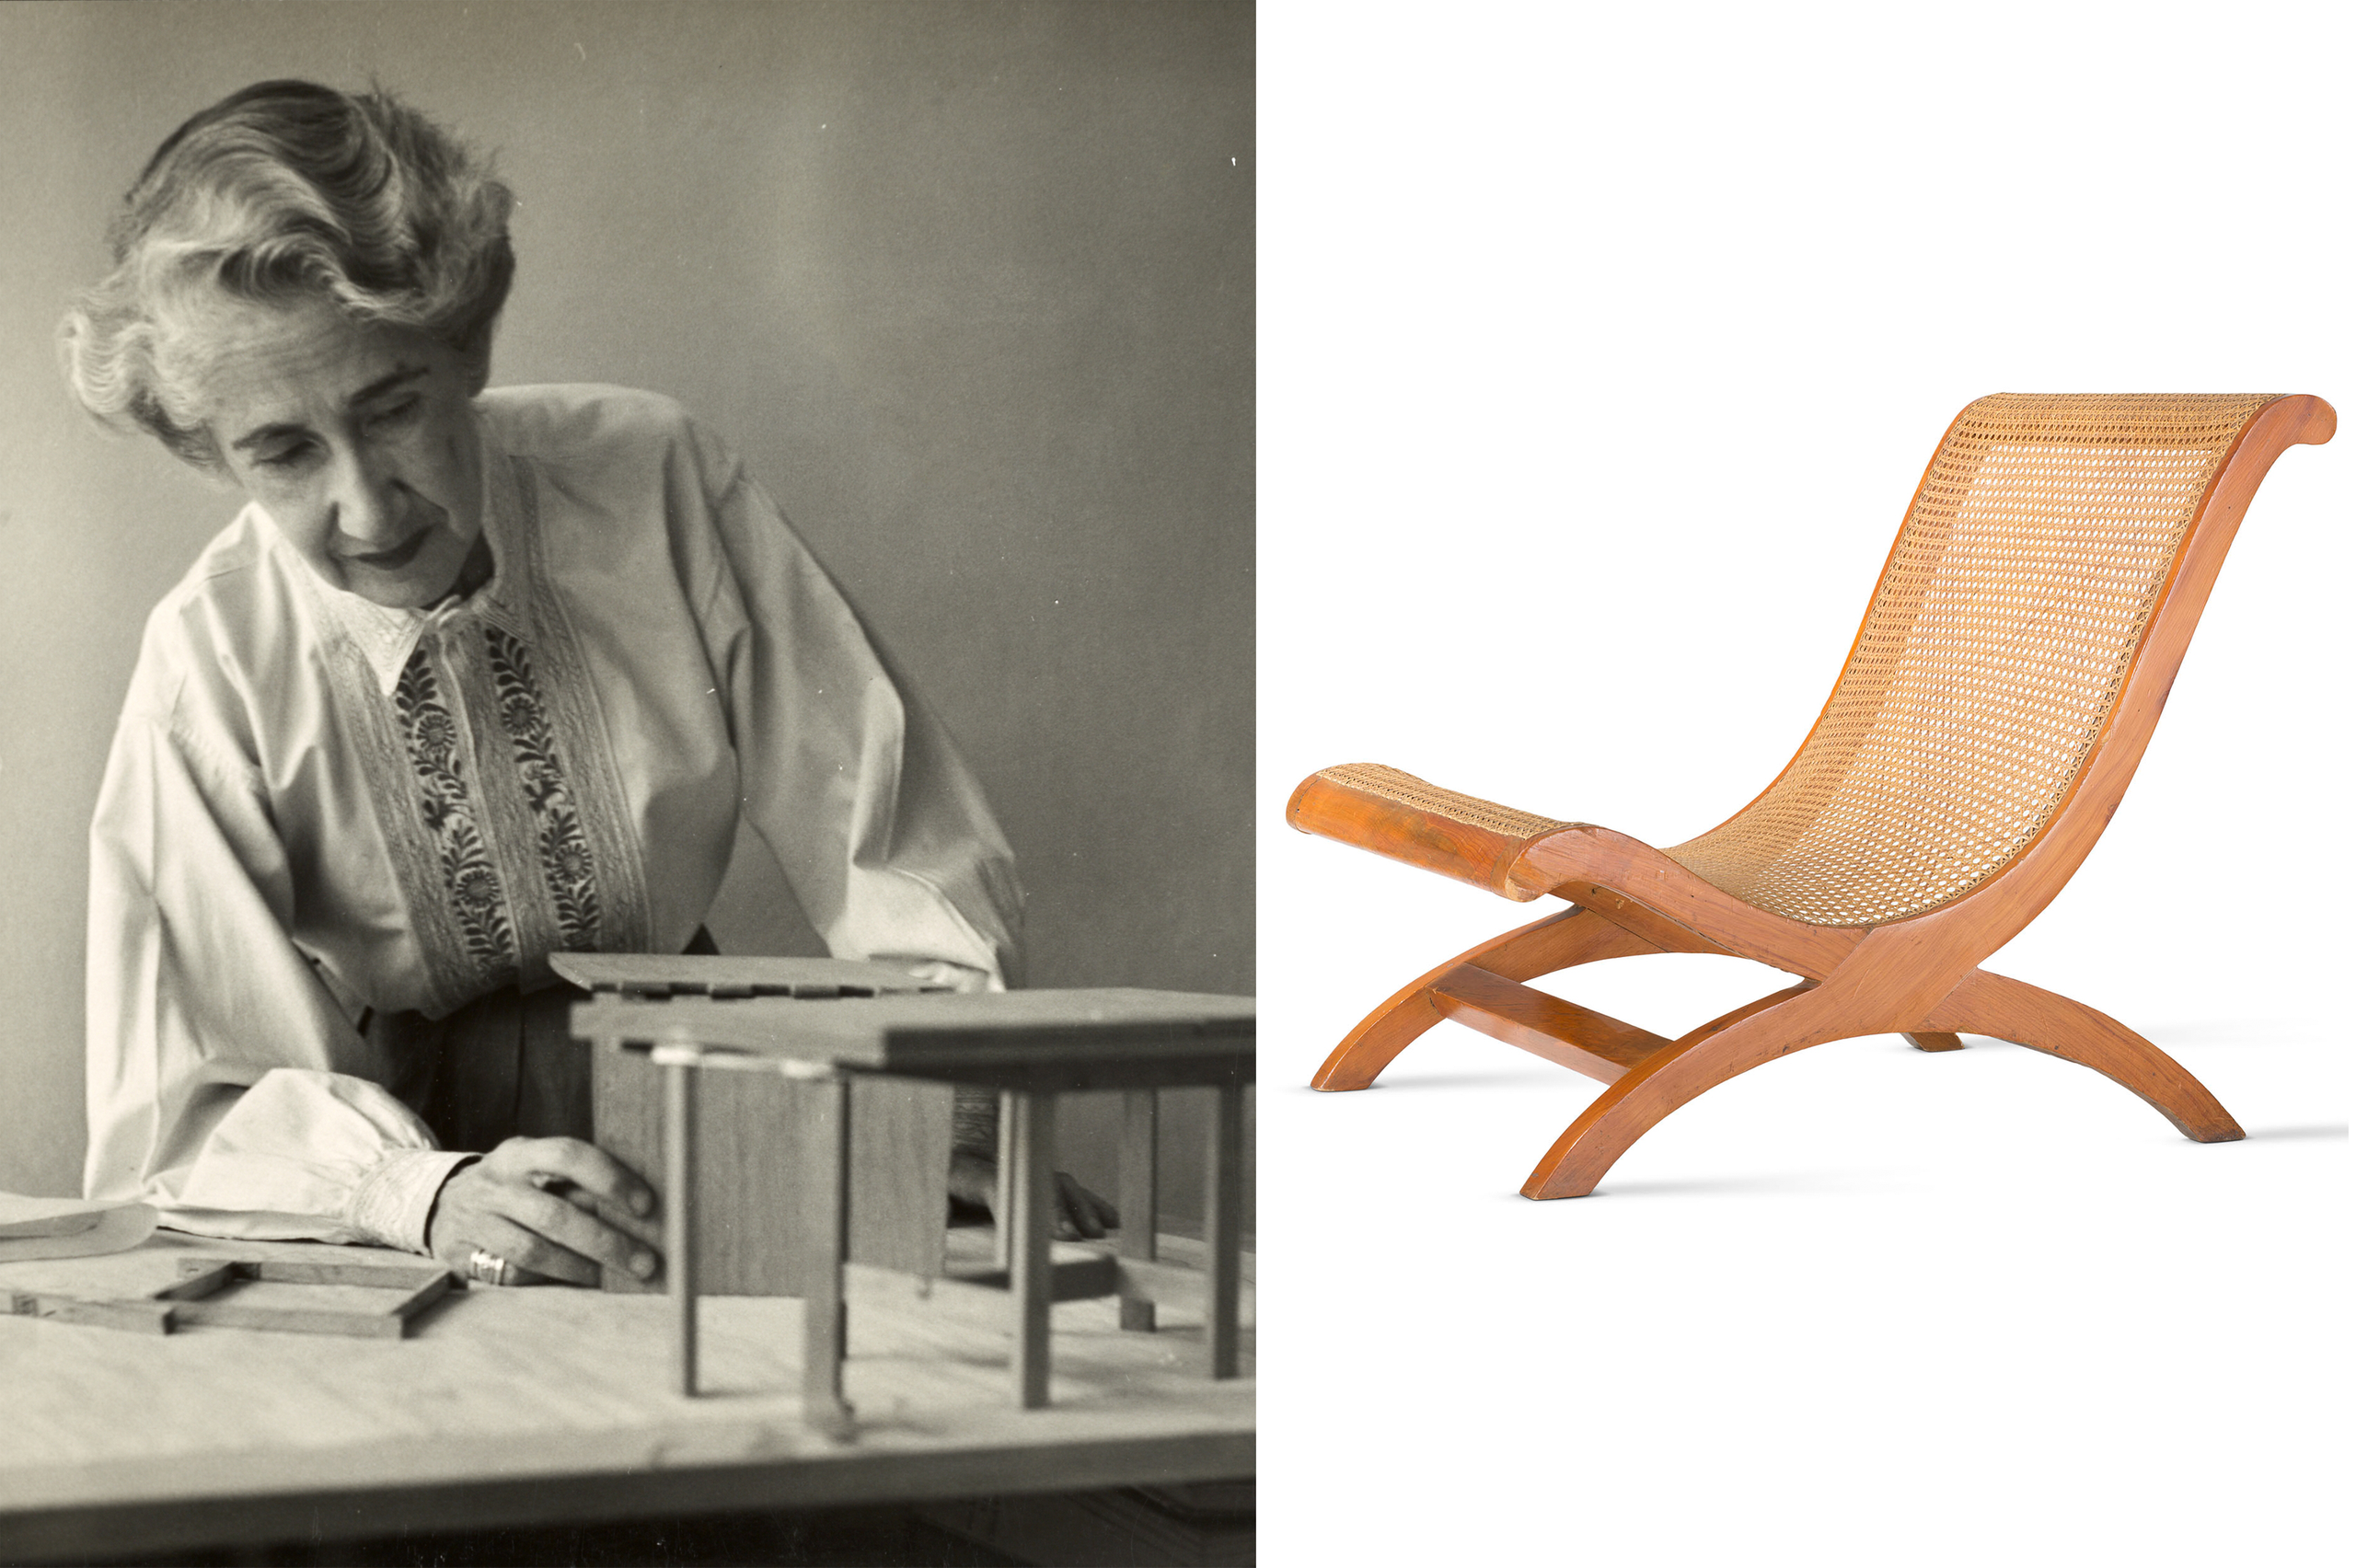 Frauenporträt und der von ihr entworfene Stuhl